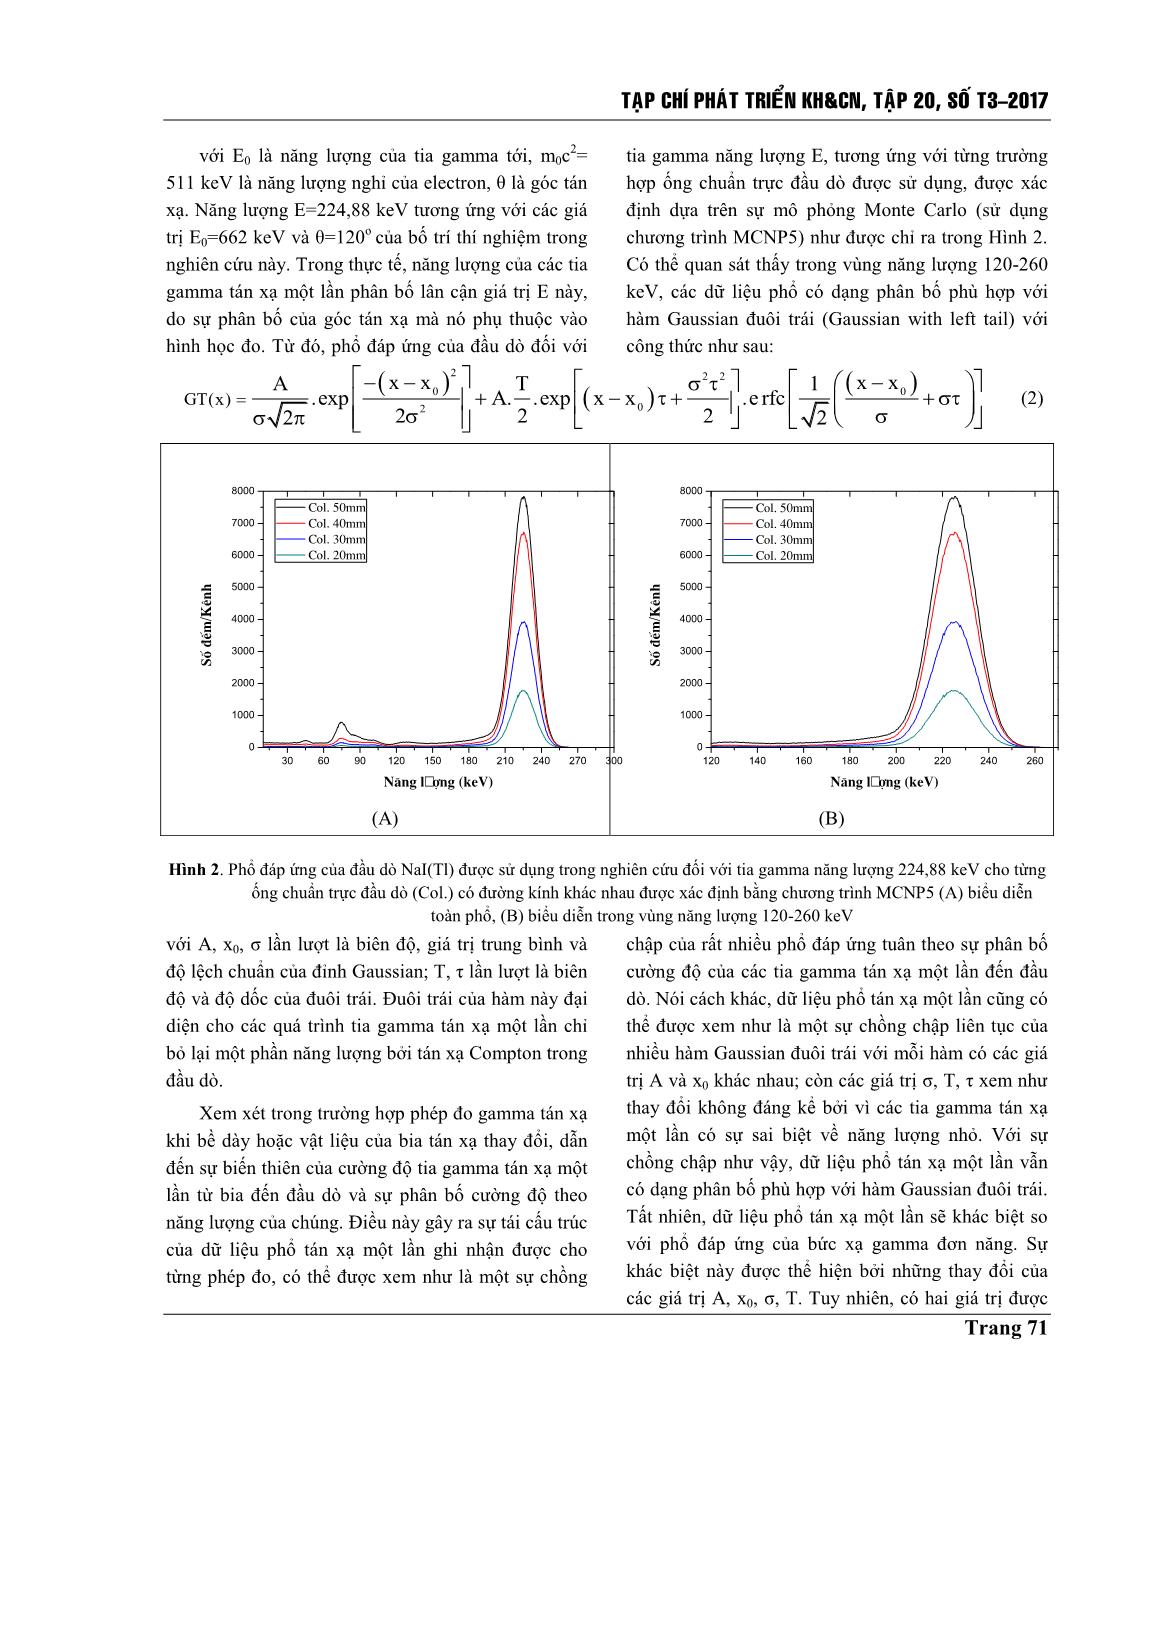 Nghiên cứu ảnh hưởng của đường kính ống chuẩn trực đầu dò lên bề dày bão hòa trong phép đo gamma tán xạ trang 4